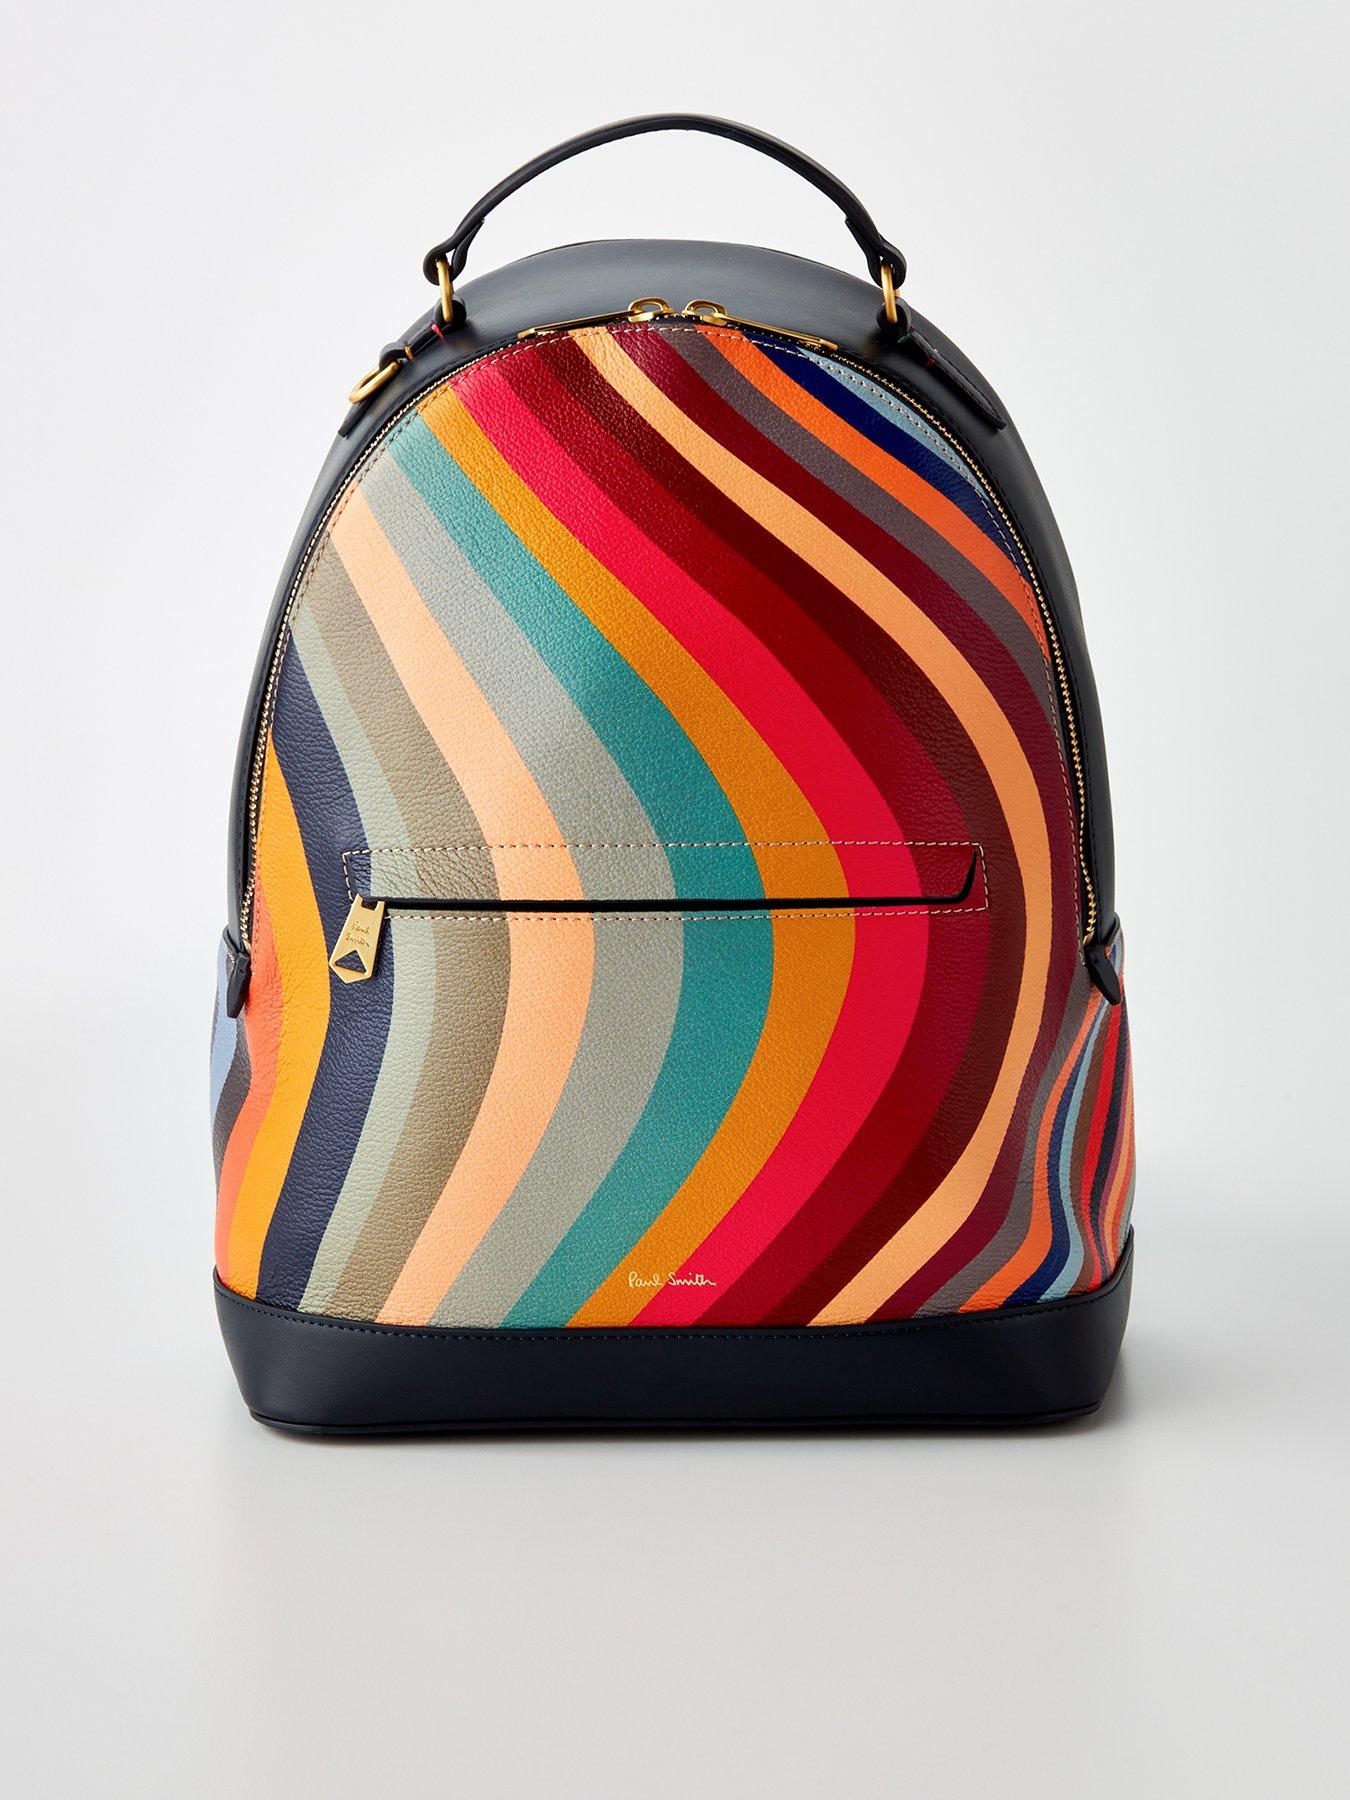 HESHE Ladies Multi Colour Leather Shoulder Bag, Colorful-2B4009,: Amazon.co. uk: Fashion